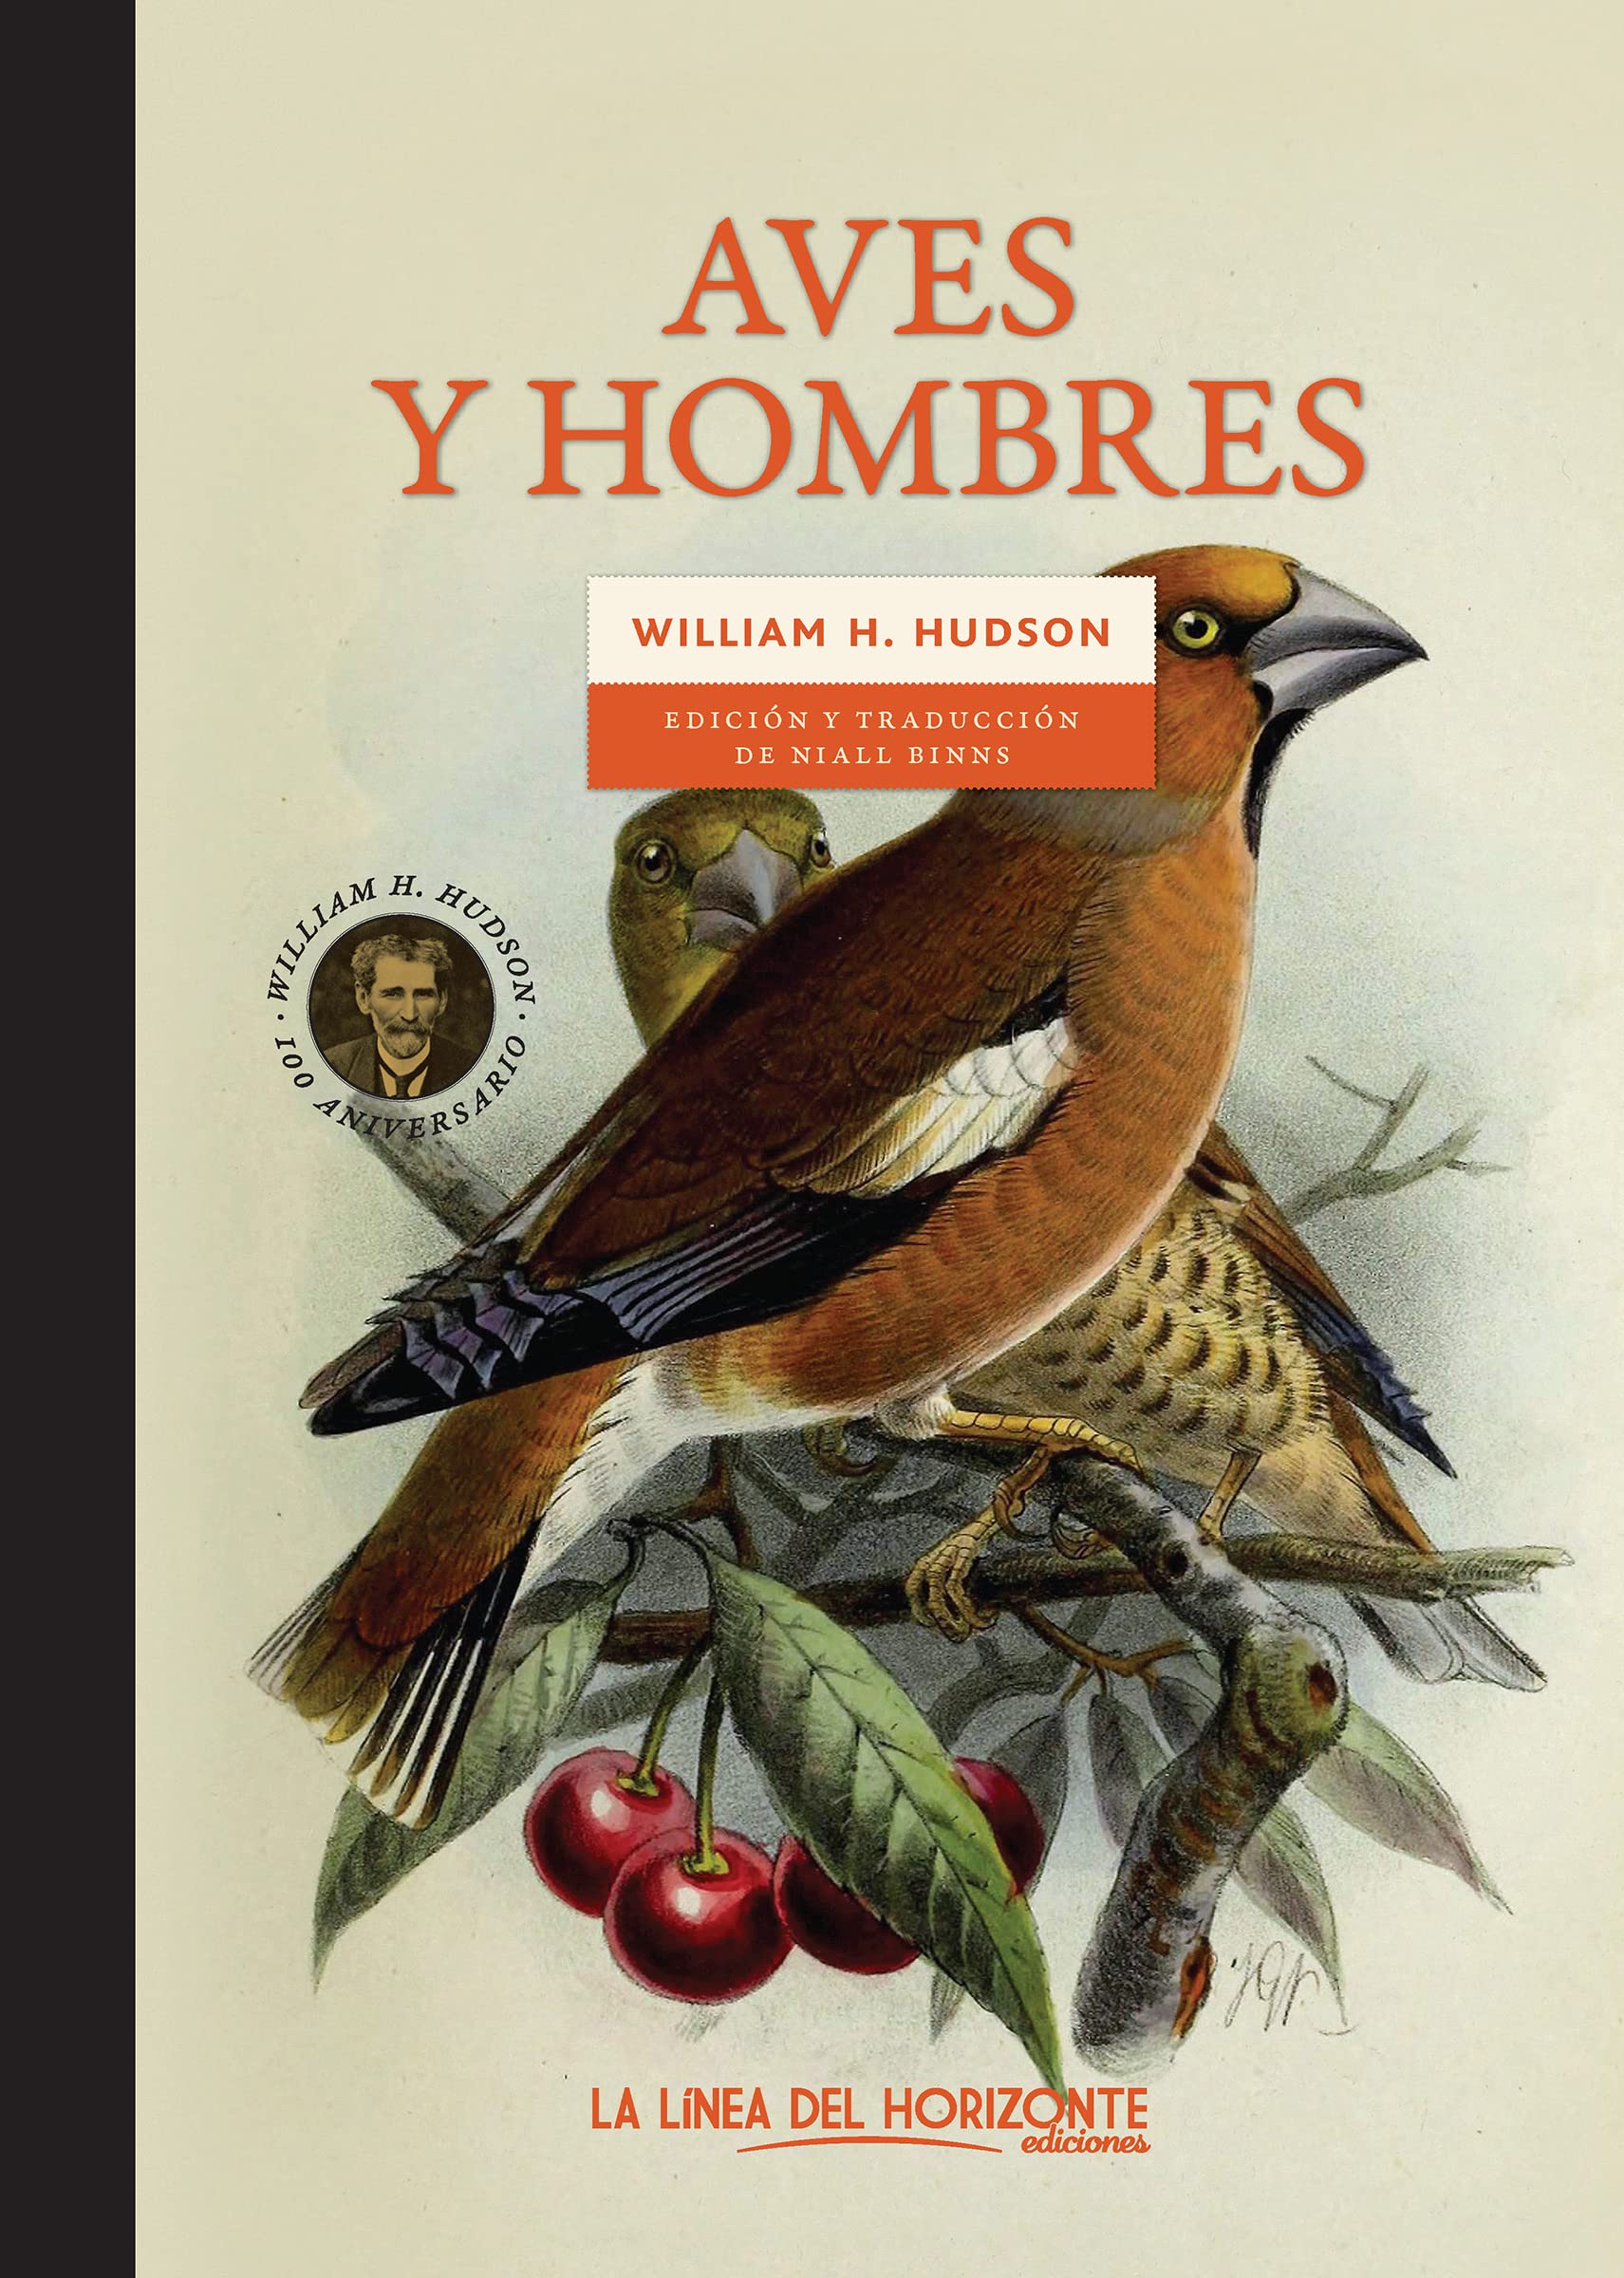 Aves y hombres, de William H. Hudson